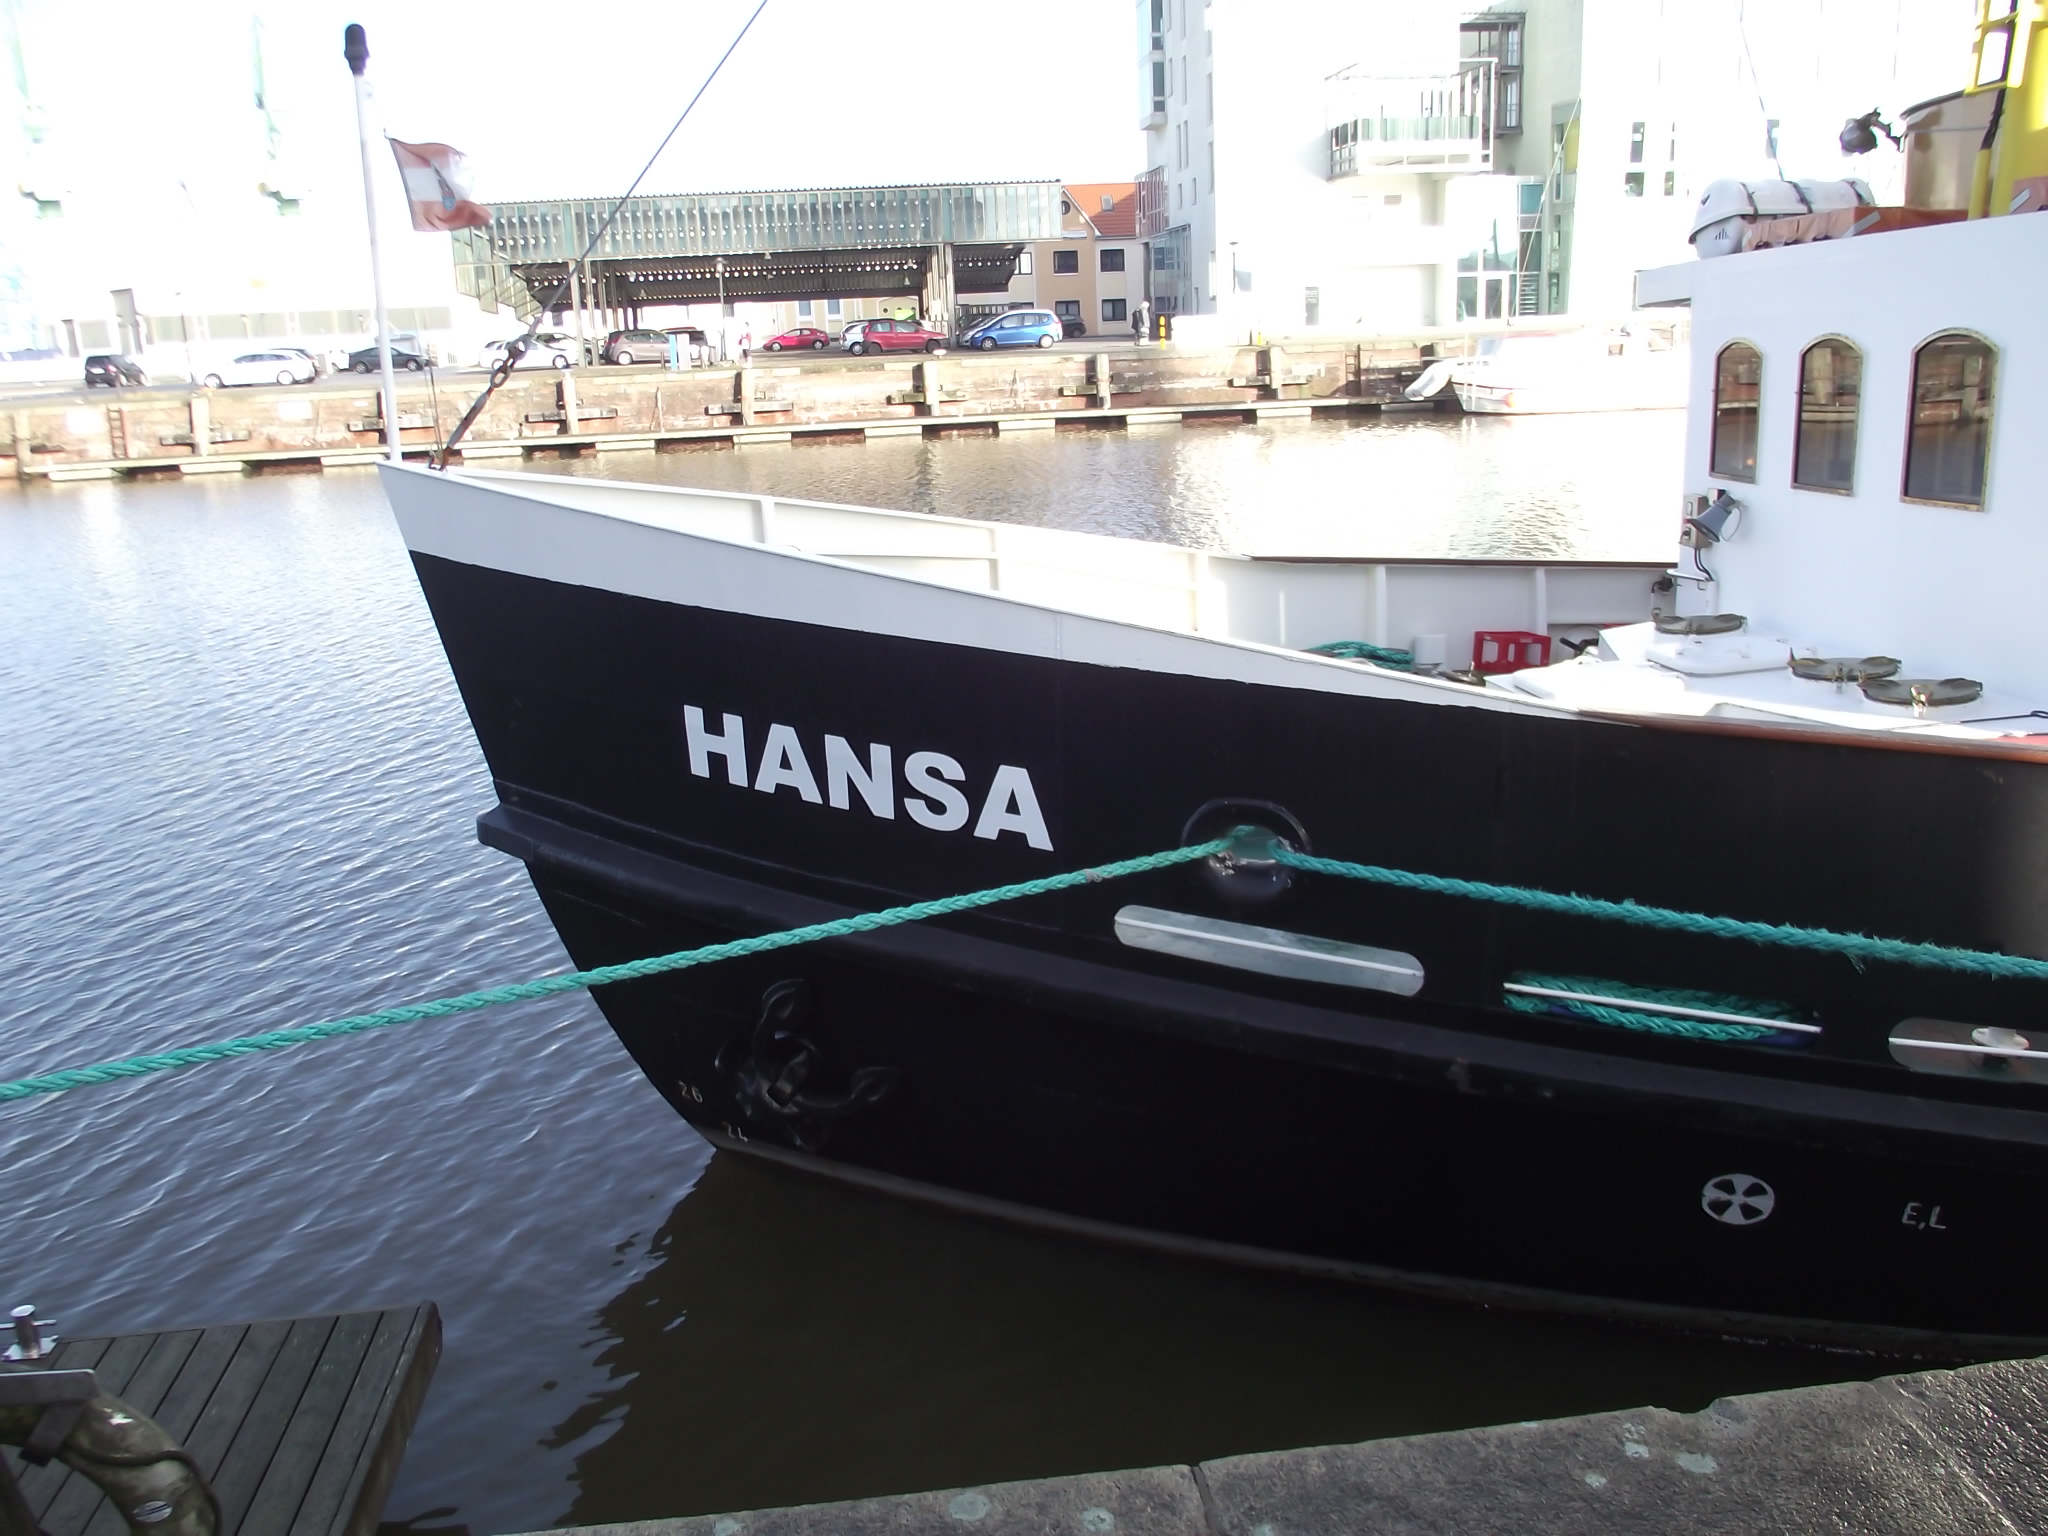 Restaurantschiff Hansa in Bremerhaven